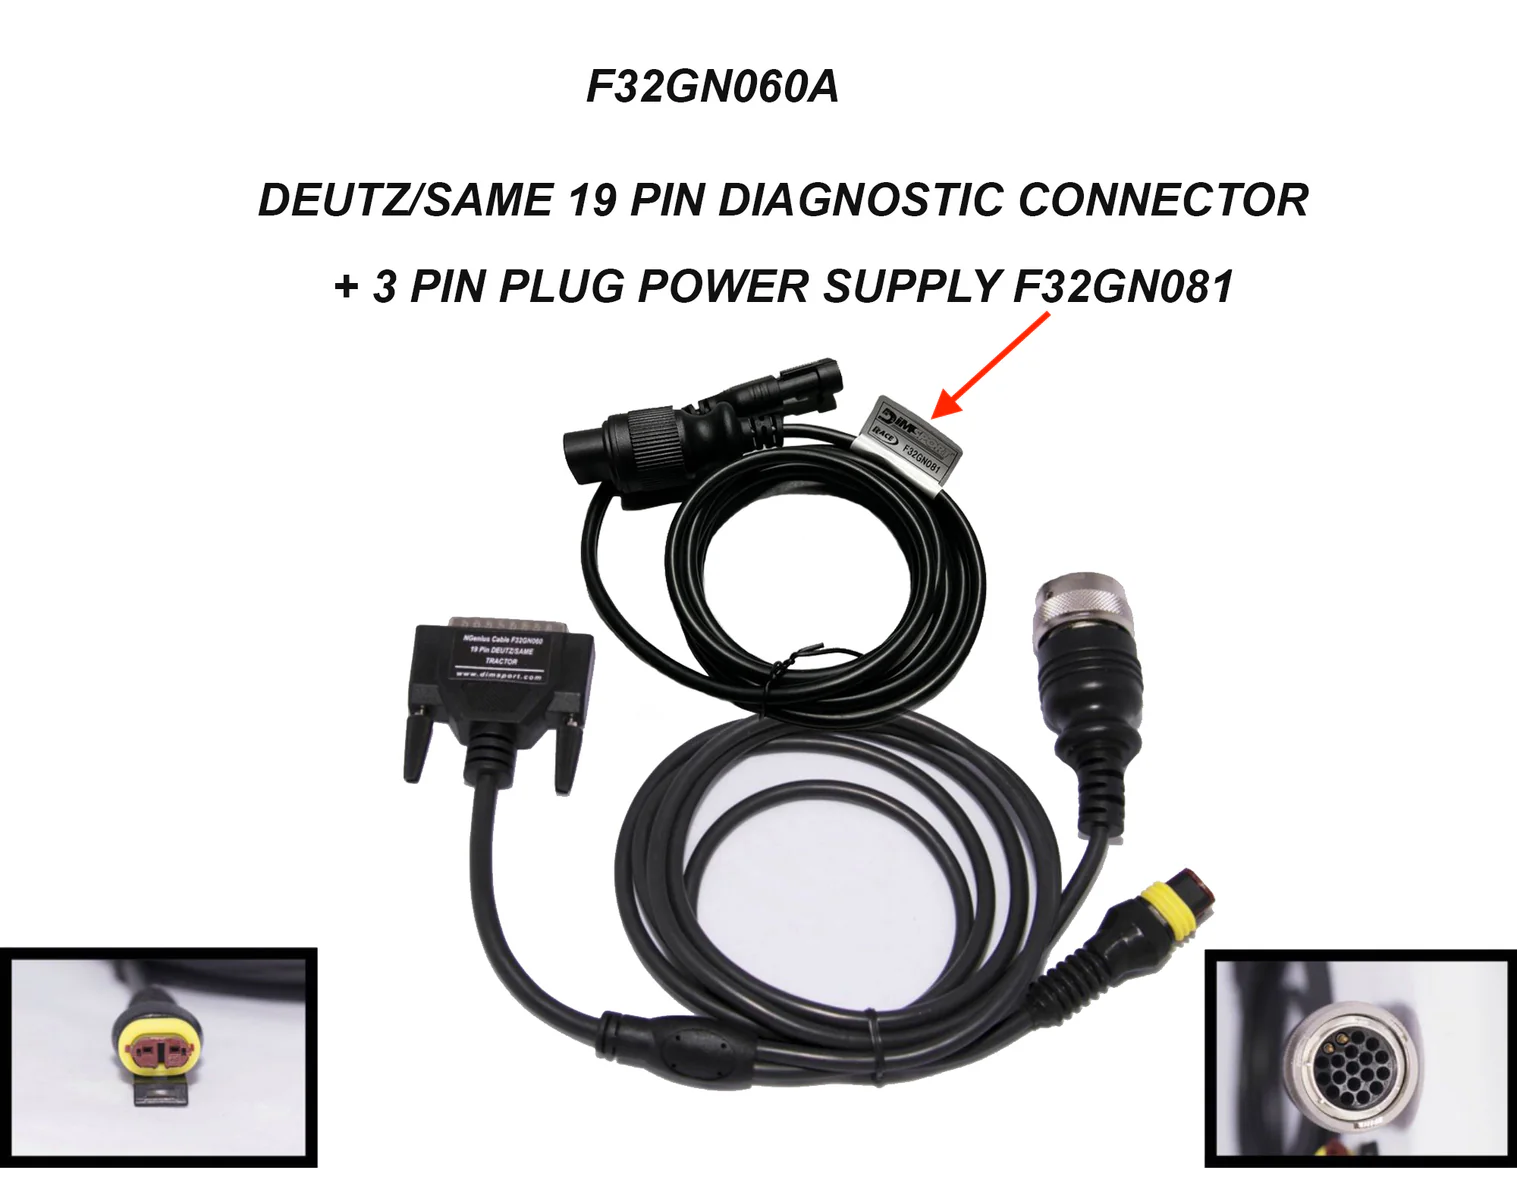 F32GN060A - Cablaggio per connettore 19 poli DEUTZ-SAME incluso alimentazione esterna 3 pin F32GN081